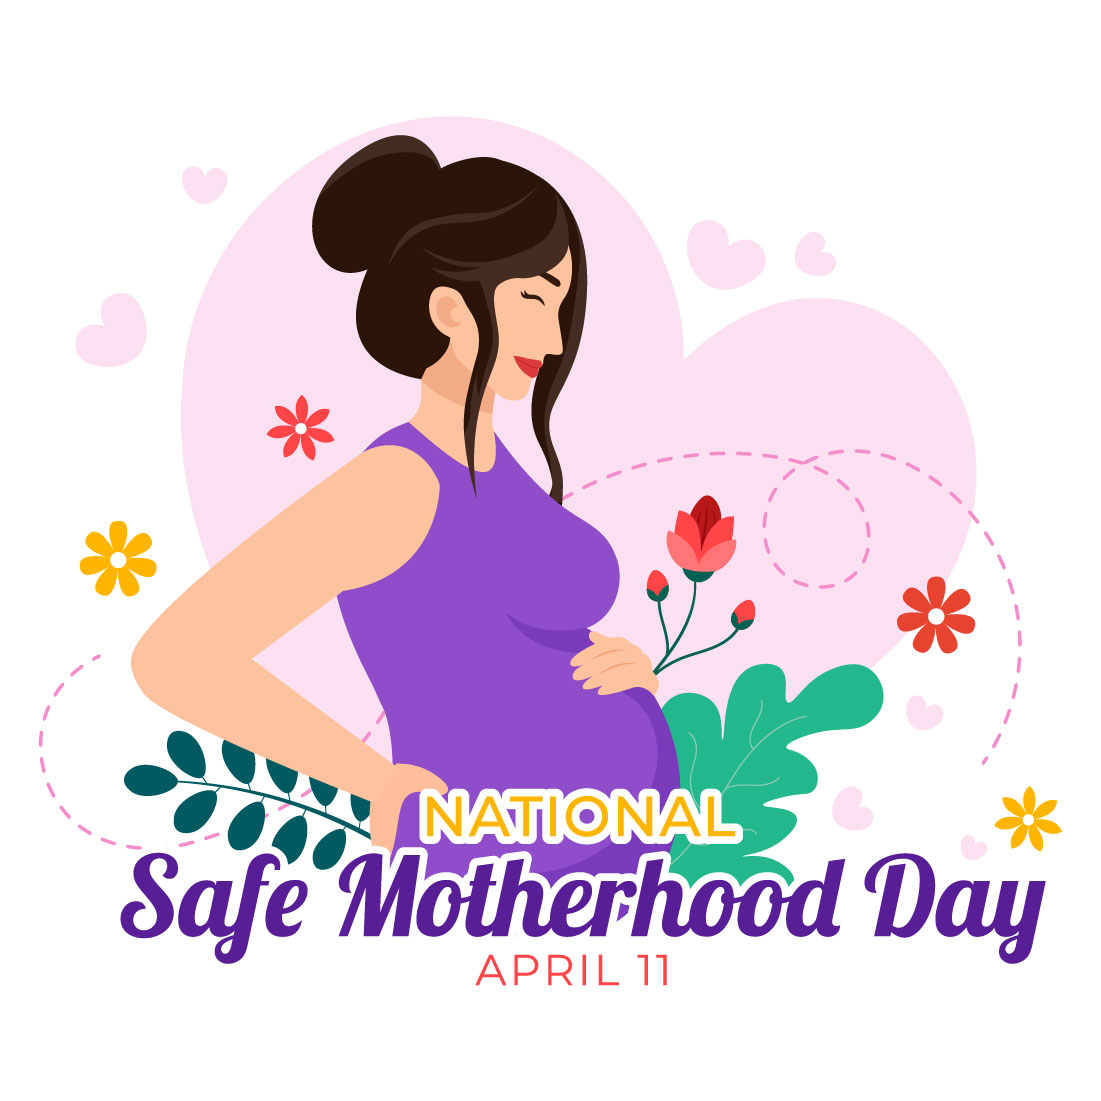 12 National Safe Motherhood Day Illustration preview image.